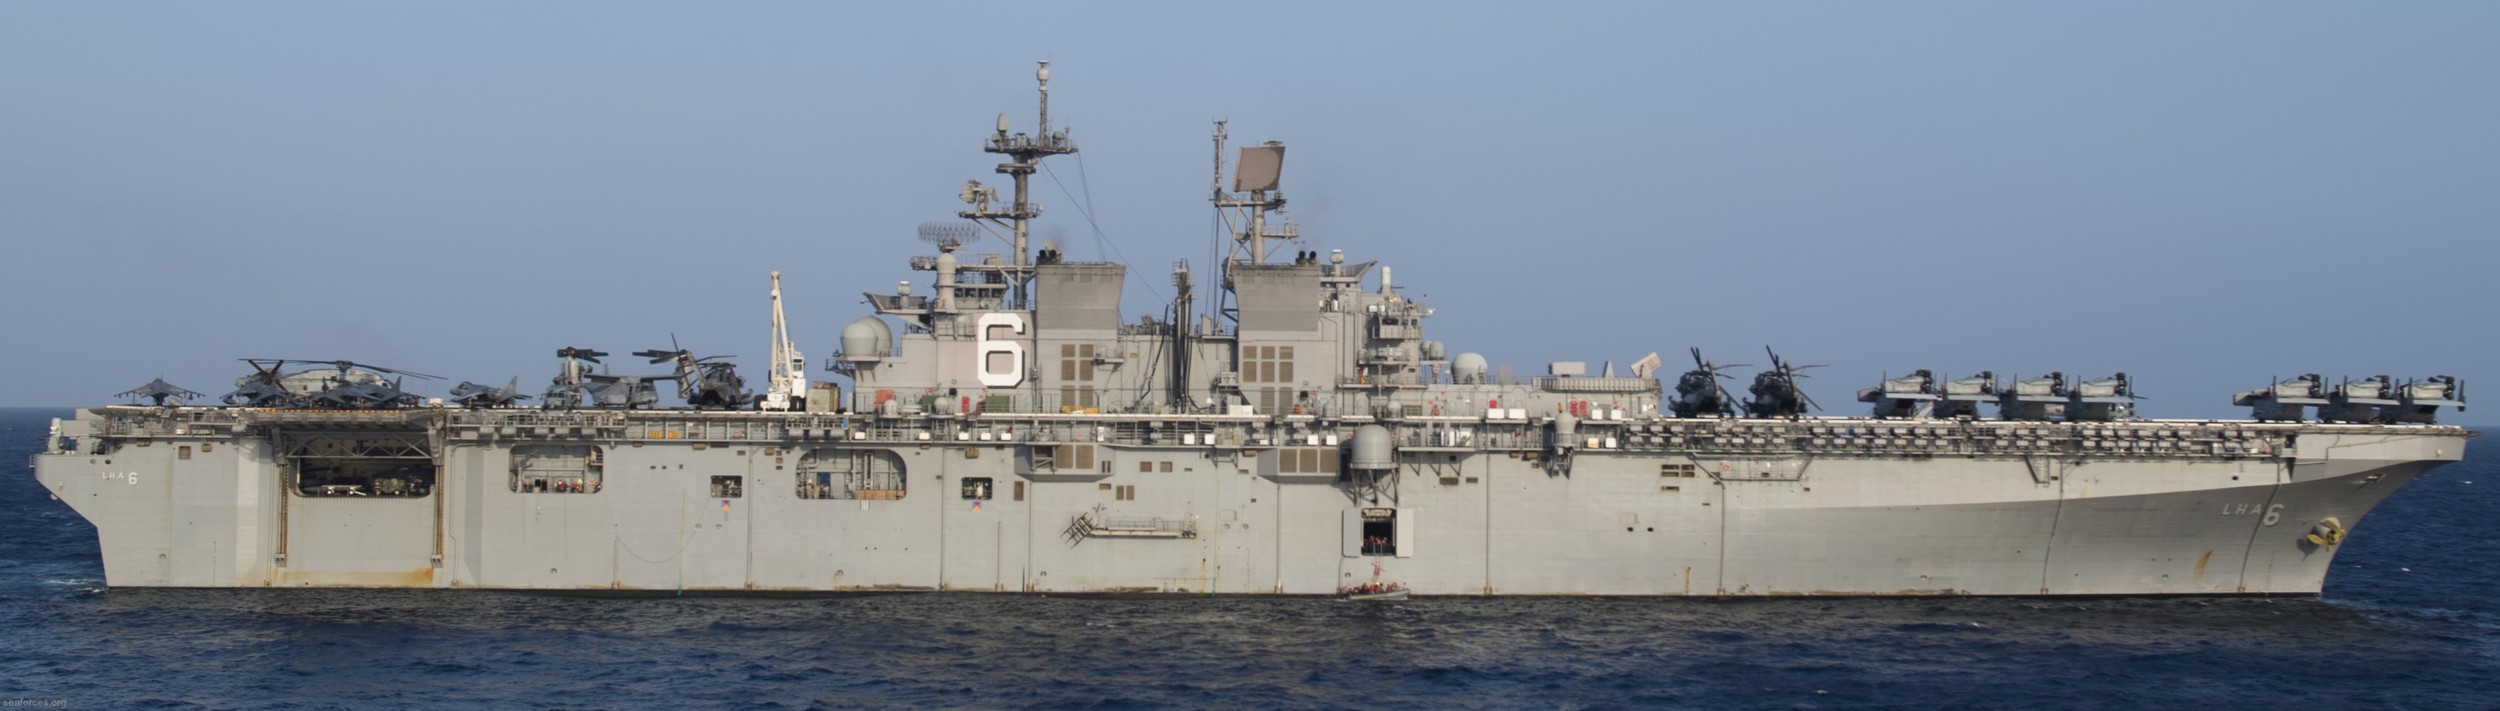 lha-6 uss america amphibious assault ship us navy 38 gulf of aden